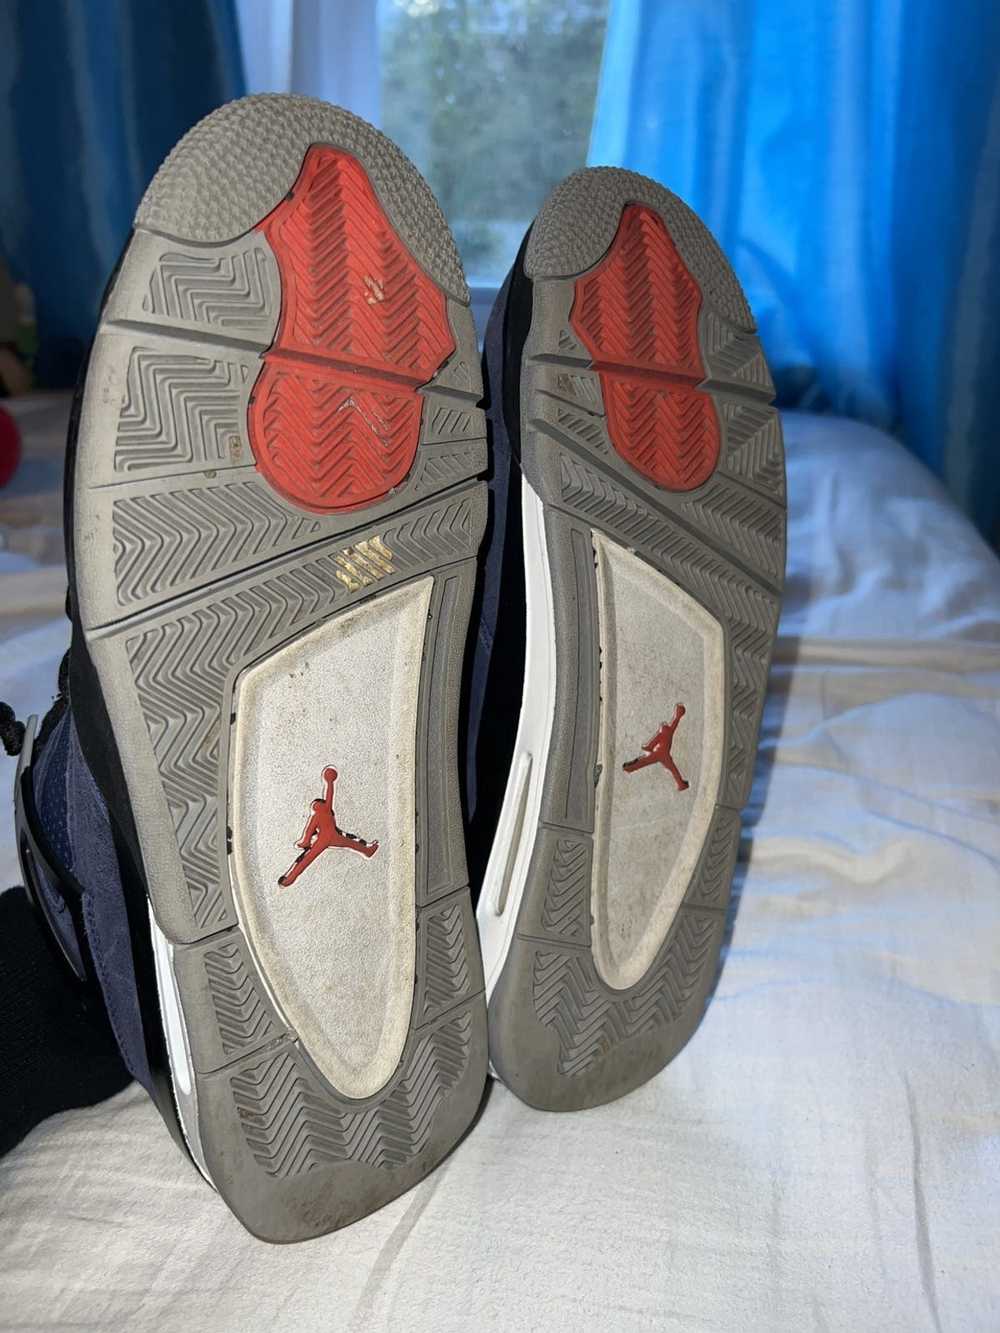 Jordan Brand × Nike Air Jordan 4 WNTR 2019 - image 5